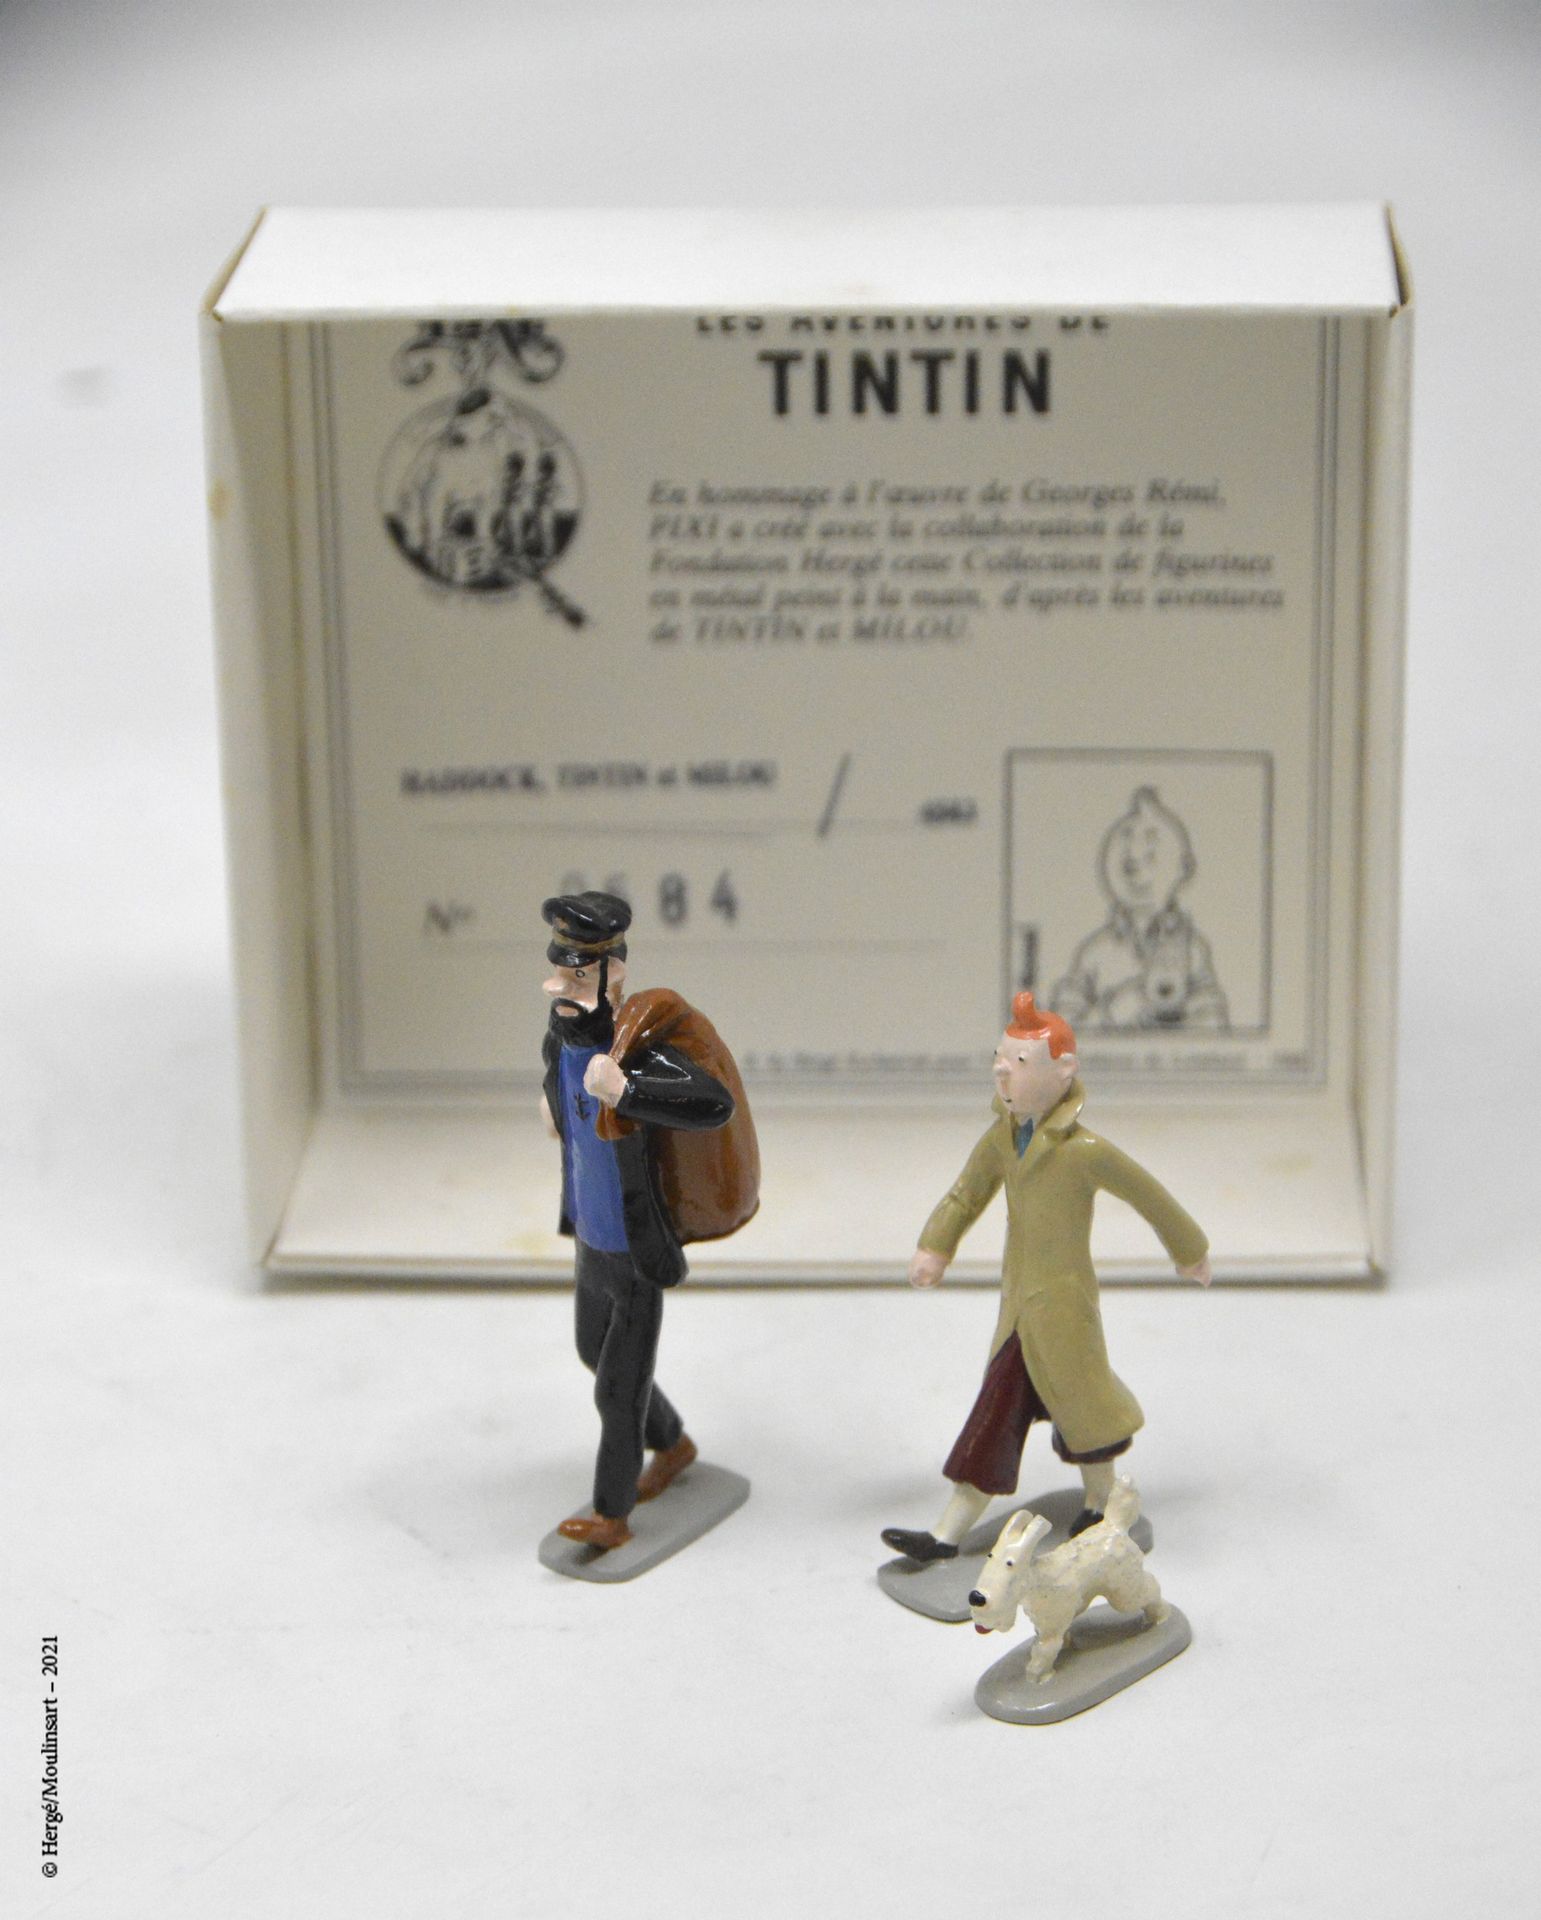 TINTIN 赫格/皮克斯（HERGÉ/PIXI

Hergé :丁丁系列第1号

阿道克、丁丁和白雪 (1988)

参考资料：4583

带着它的盒子和它的&hellip;